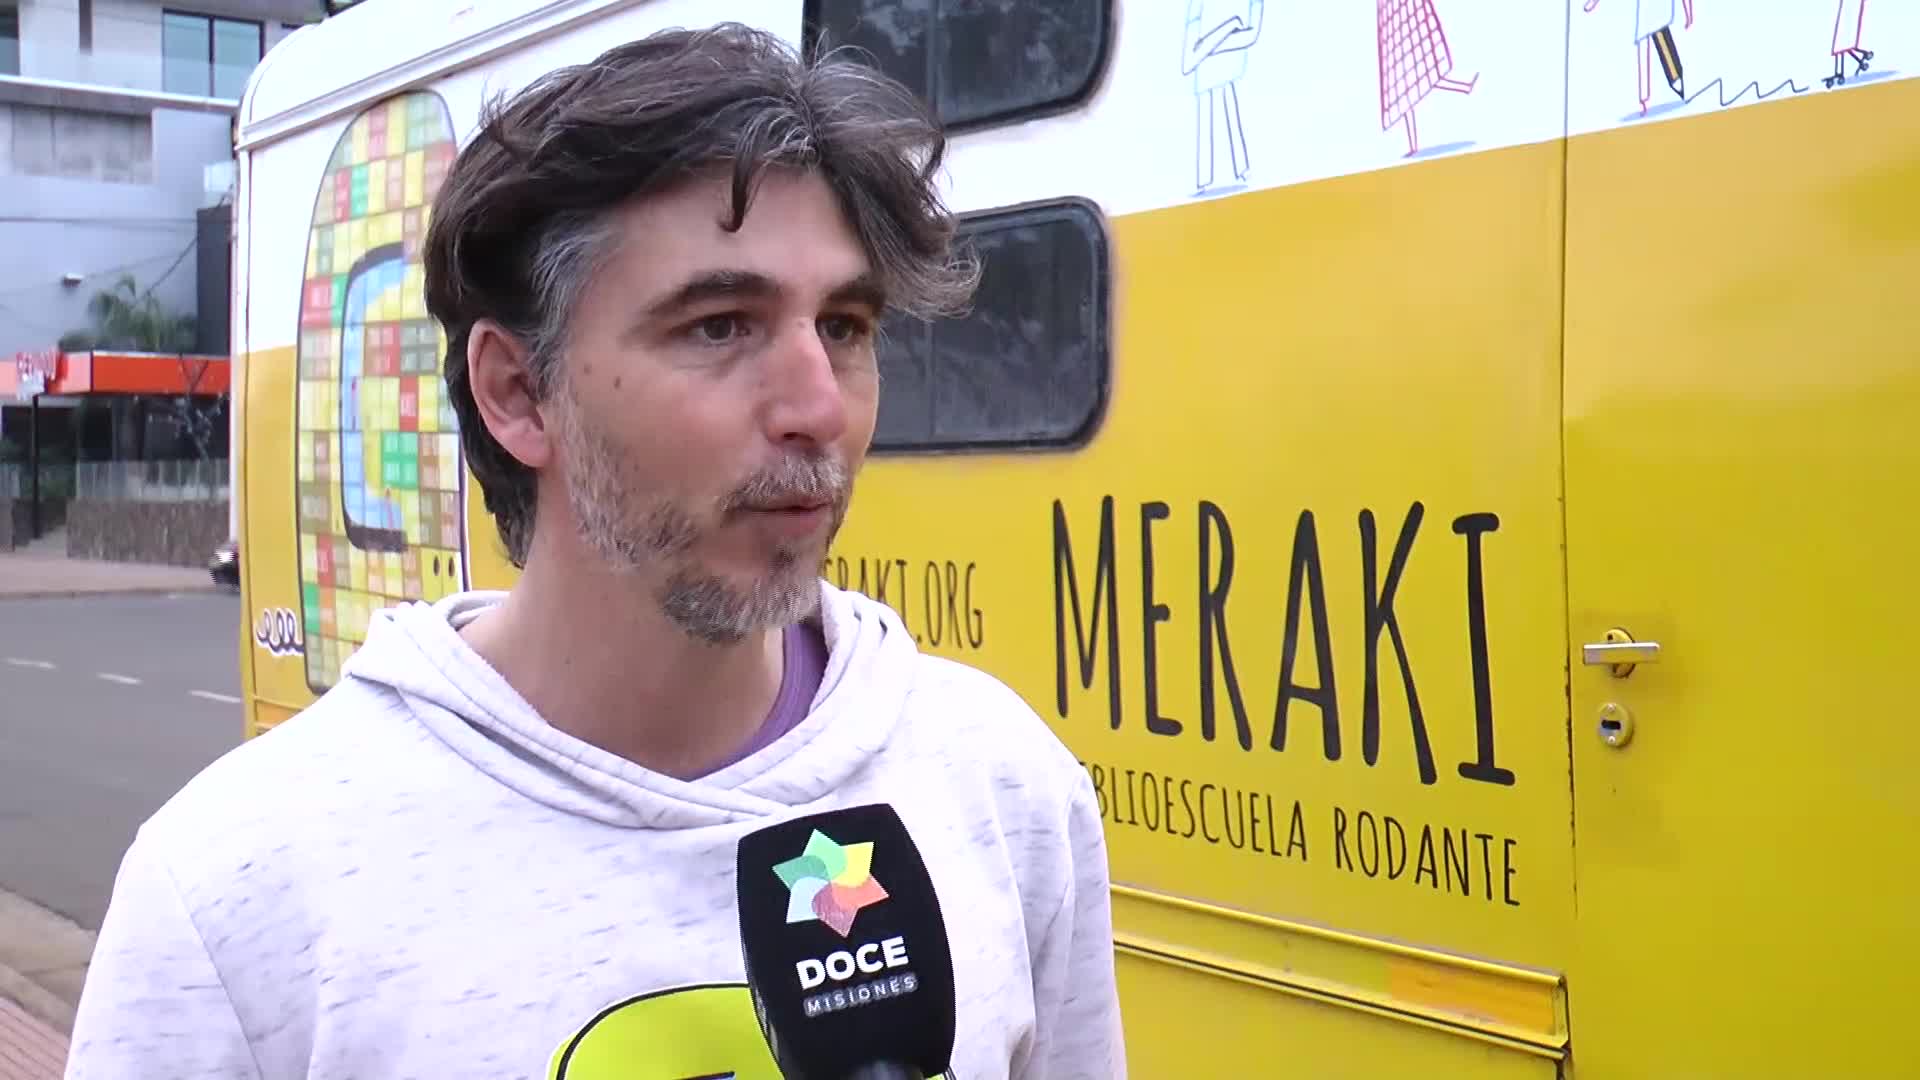 Proyecto Meraki: una aventura educativa a bordo de la biblioescuela rodante